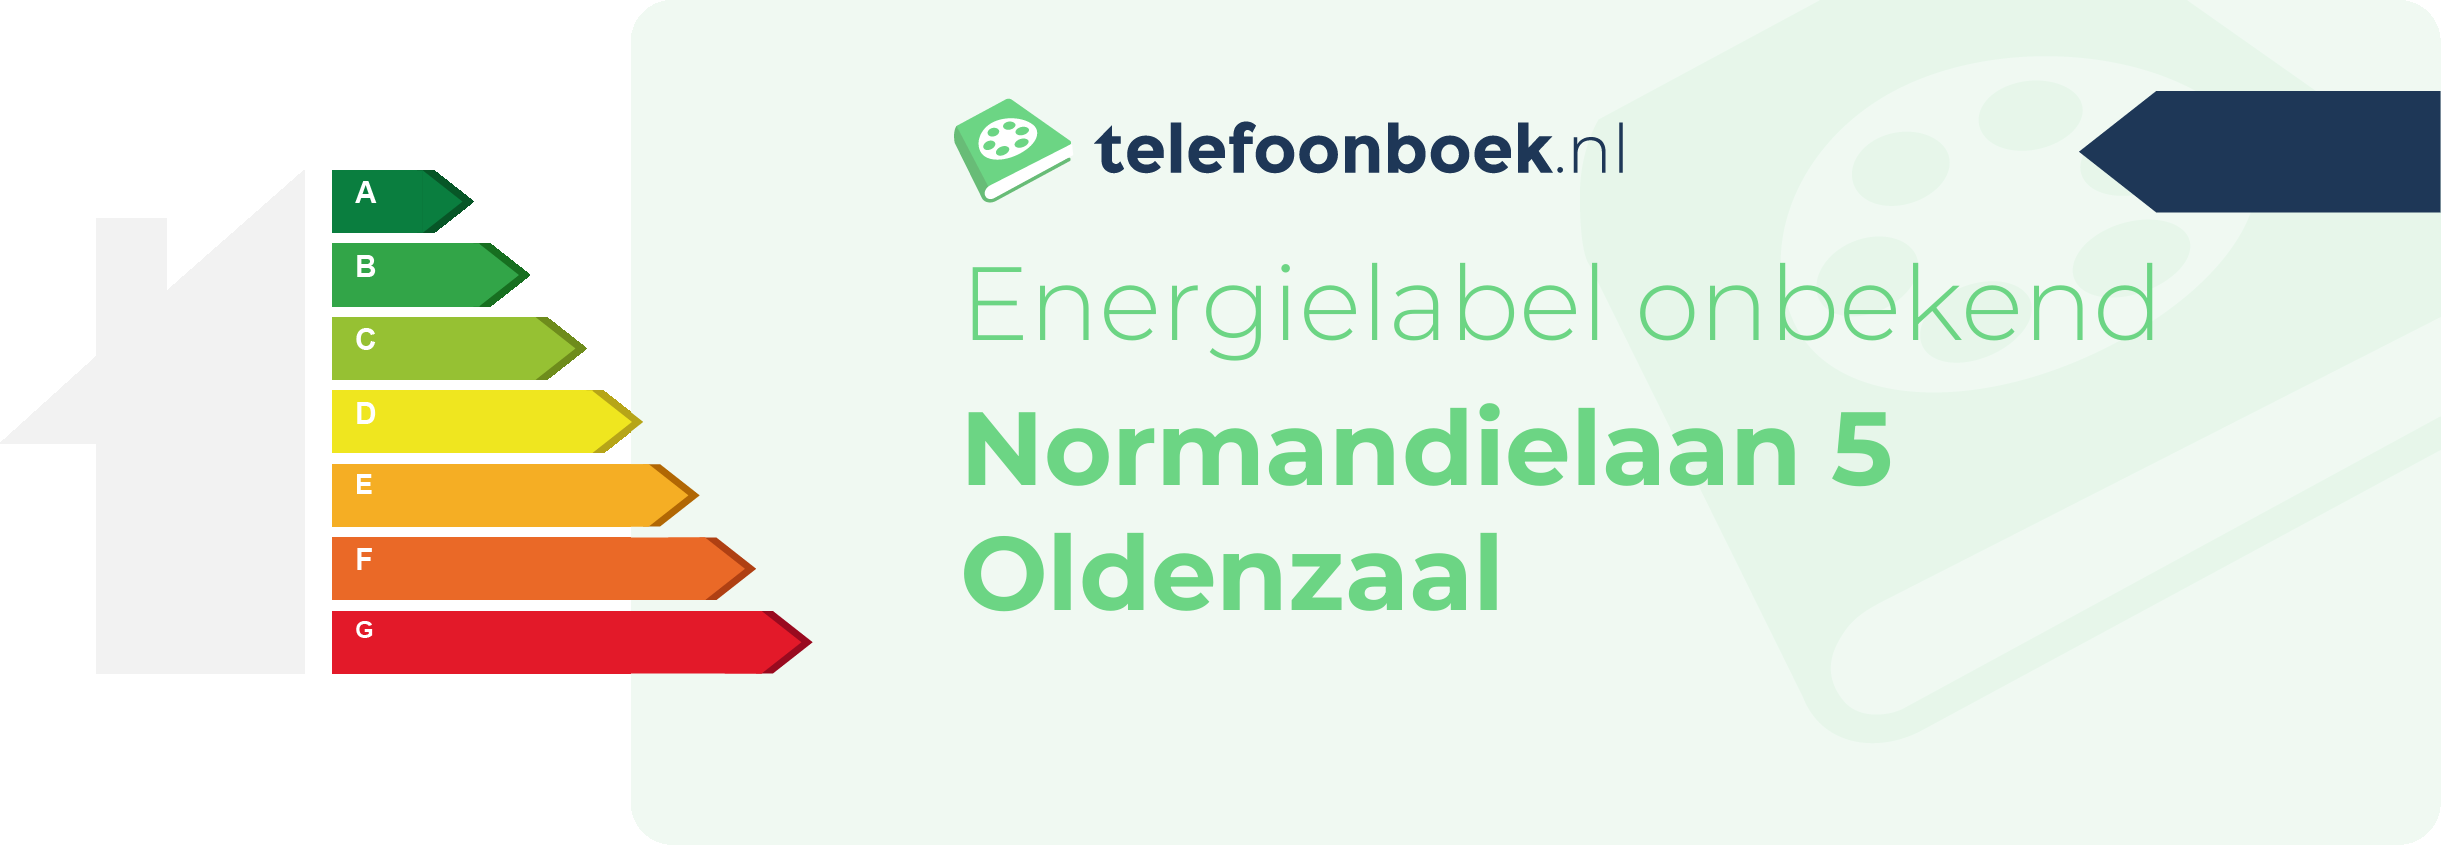 Energielabel Normandielaan 5 Oldenzaal